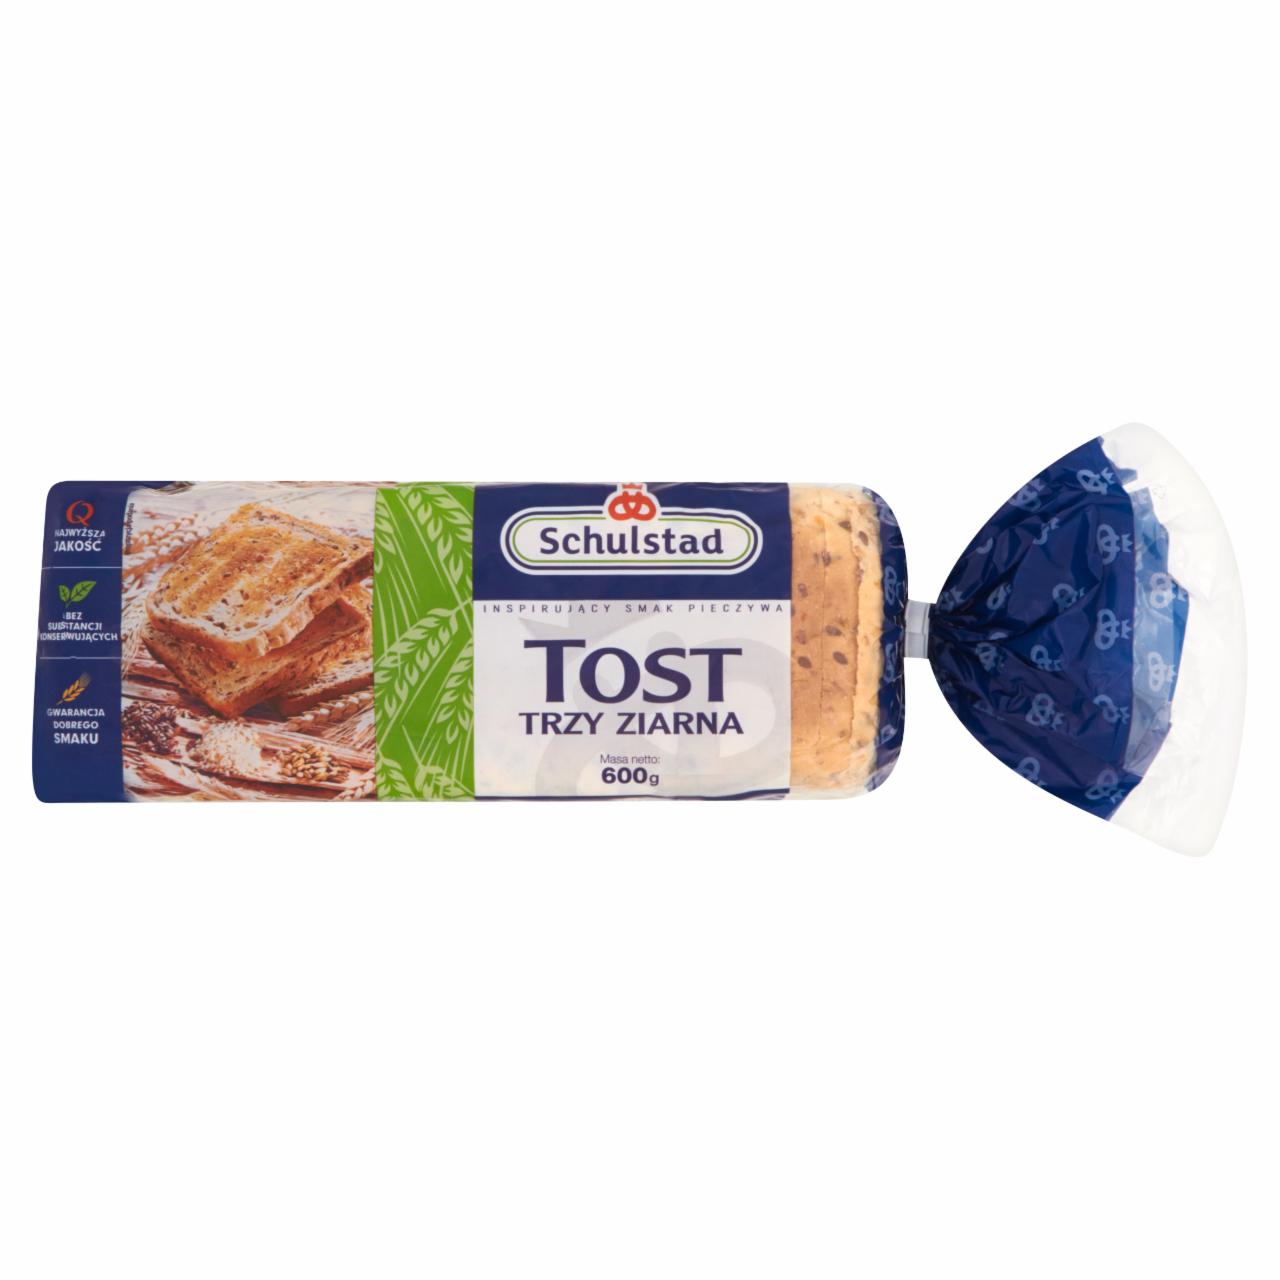 Zdjęcia - Schulstad Tost trzy ziarna Chleb tostowy 600 g